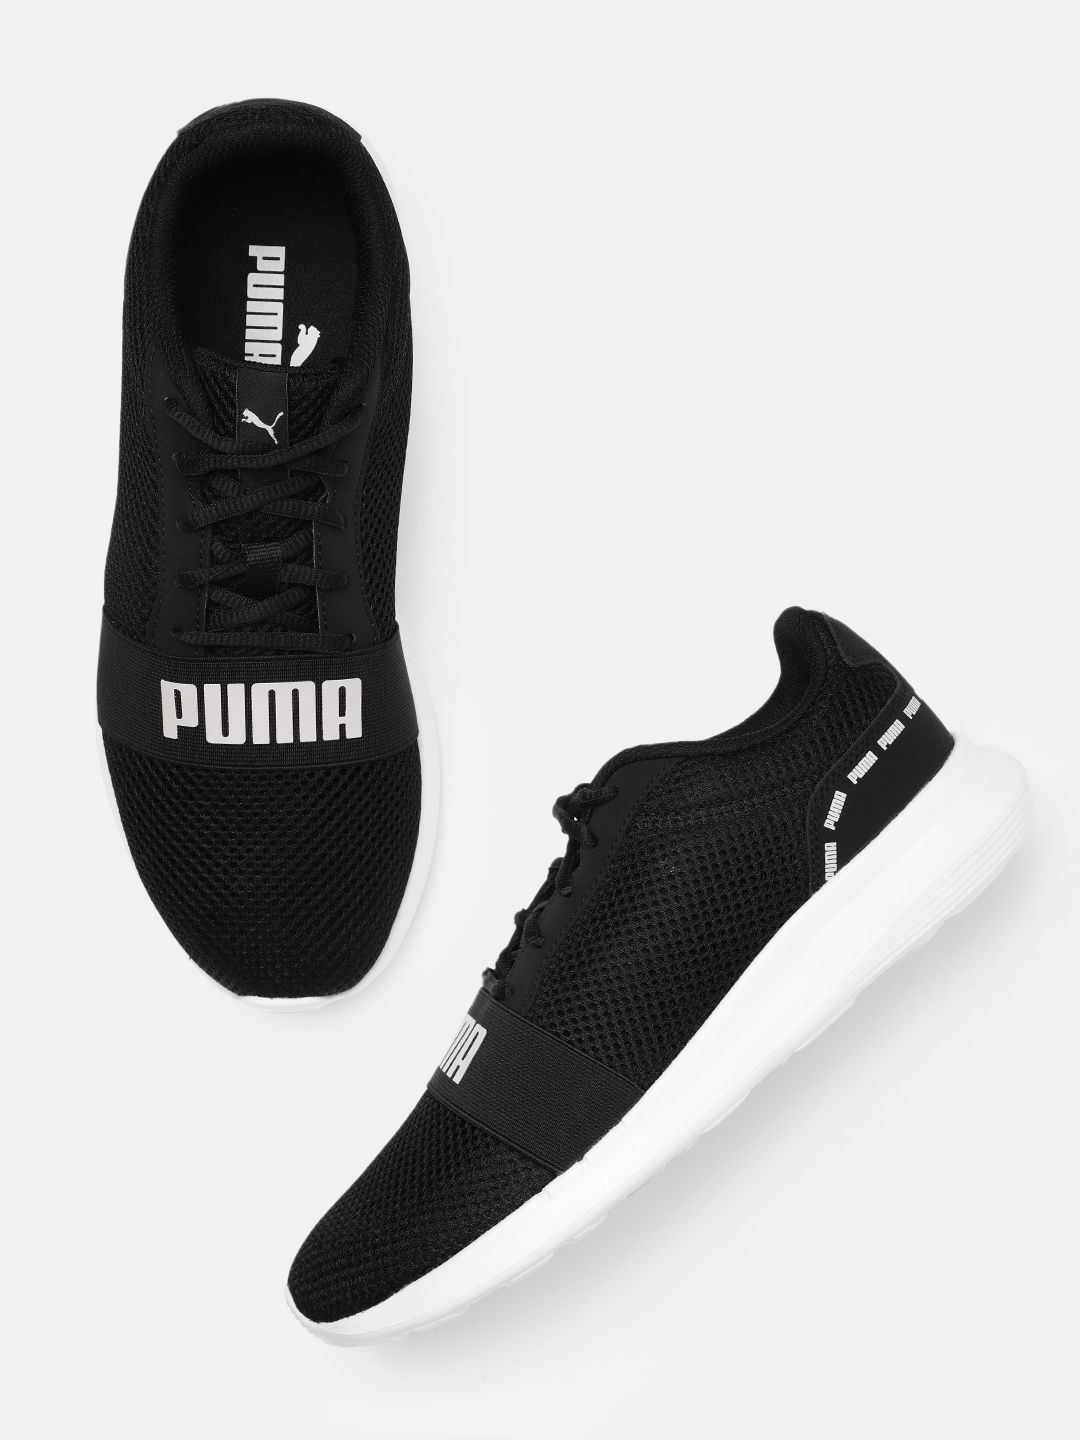 Puma Unisex Black Urus Brand Logo Print Sneakers Price in India